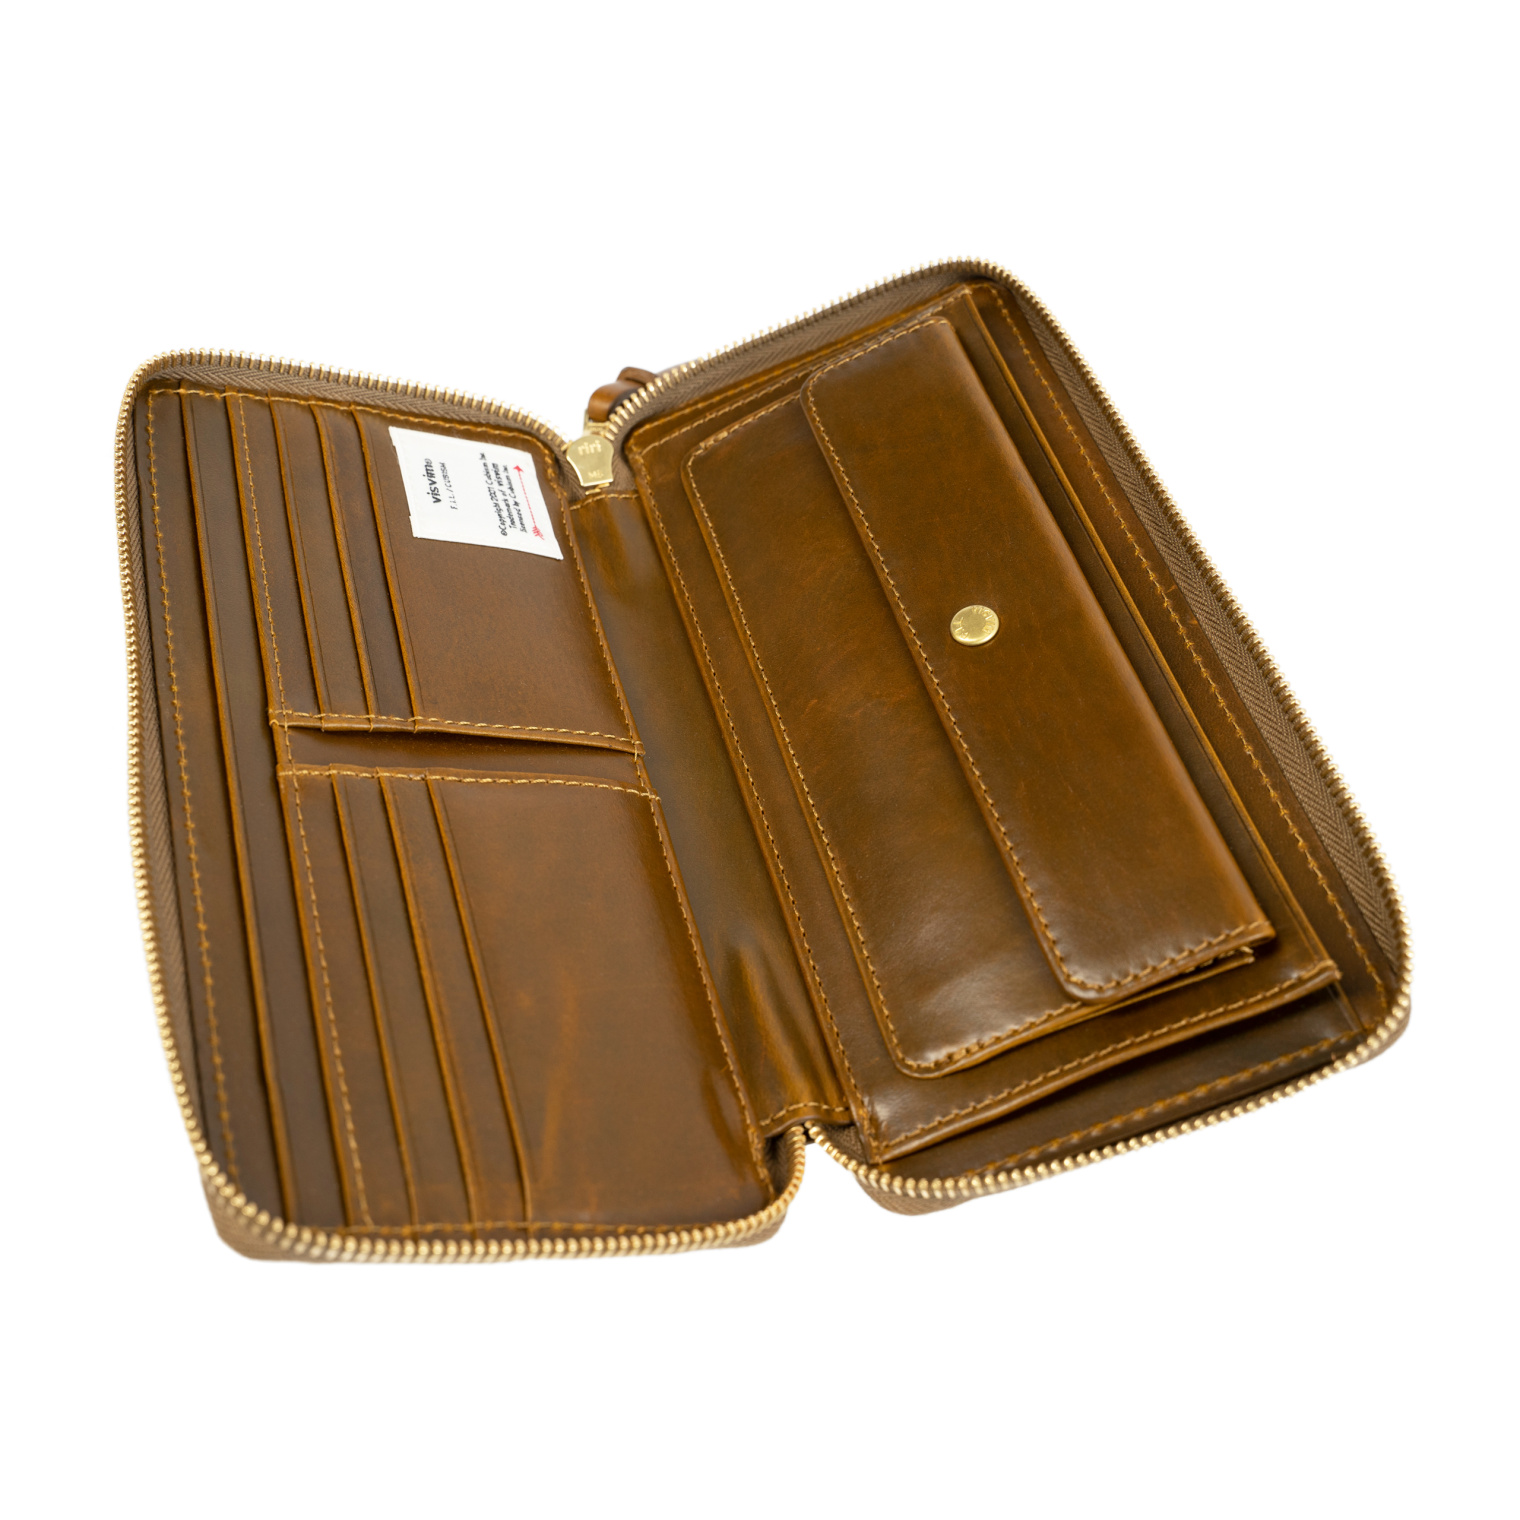 Buy visvim men brown leather long wallet for $ online on SV